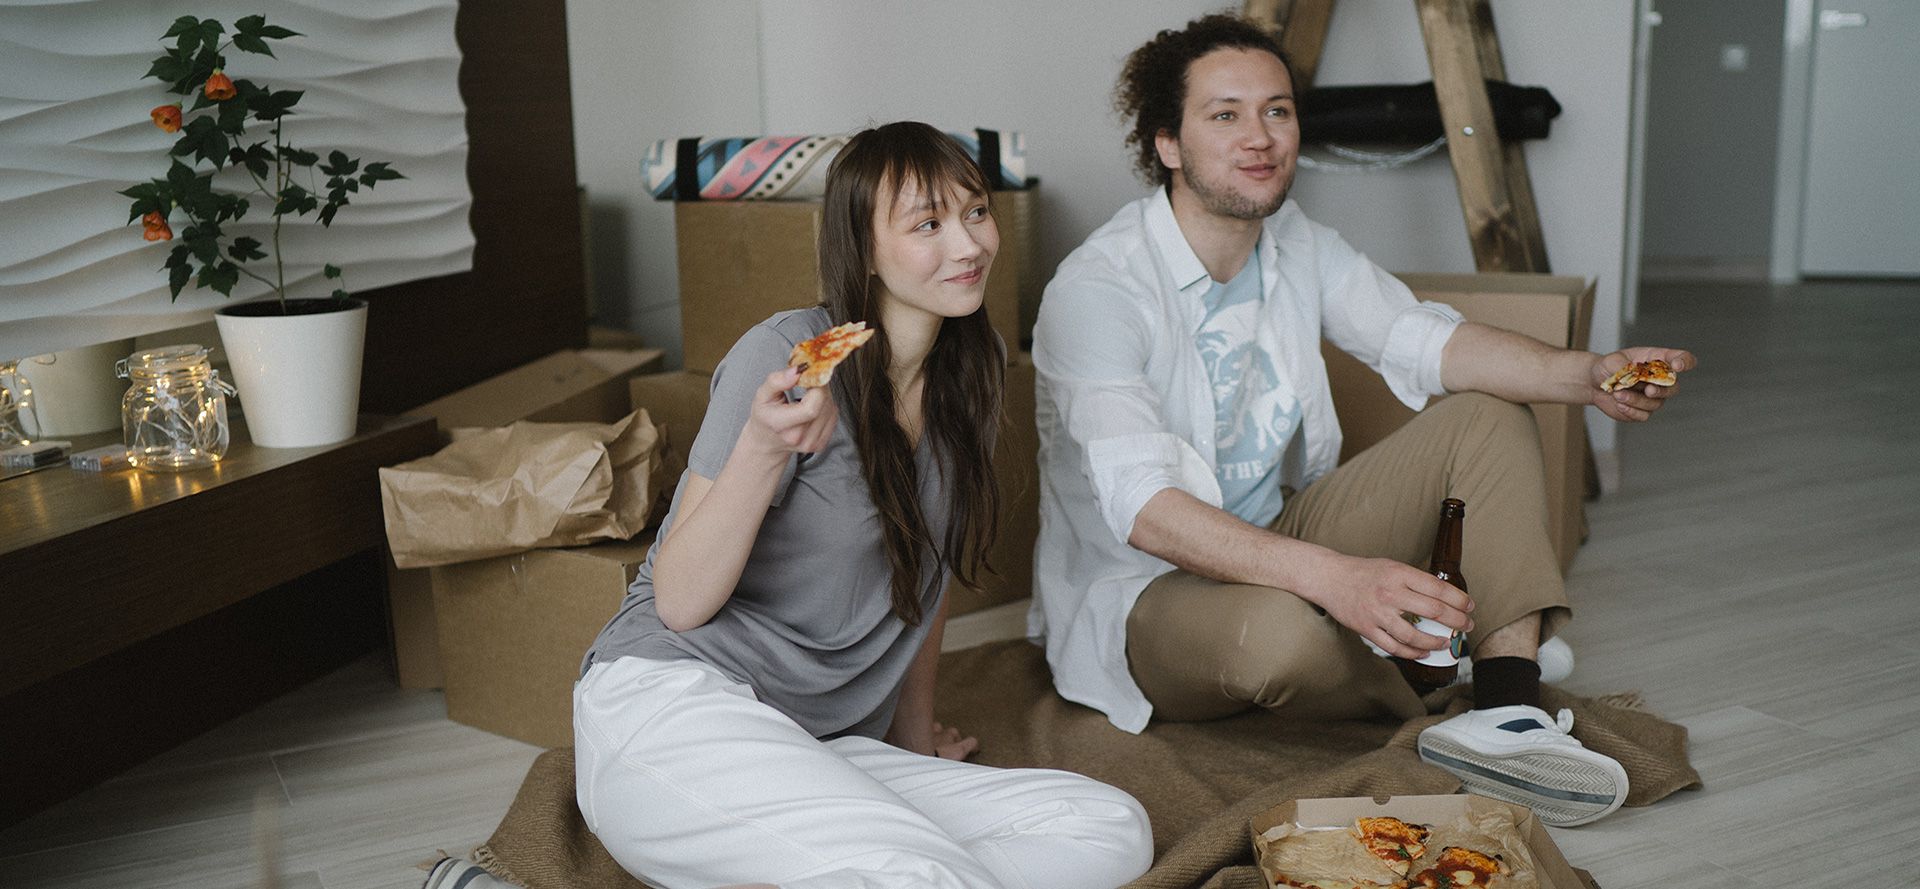 Et par spiser pizza på en date.